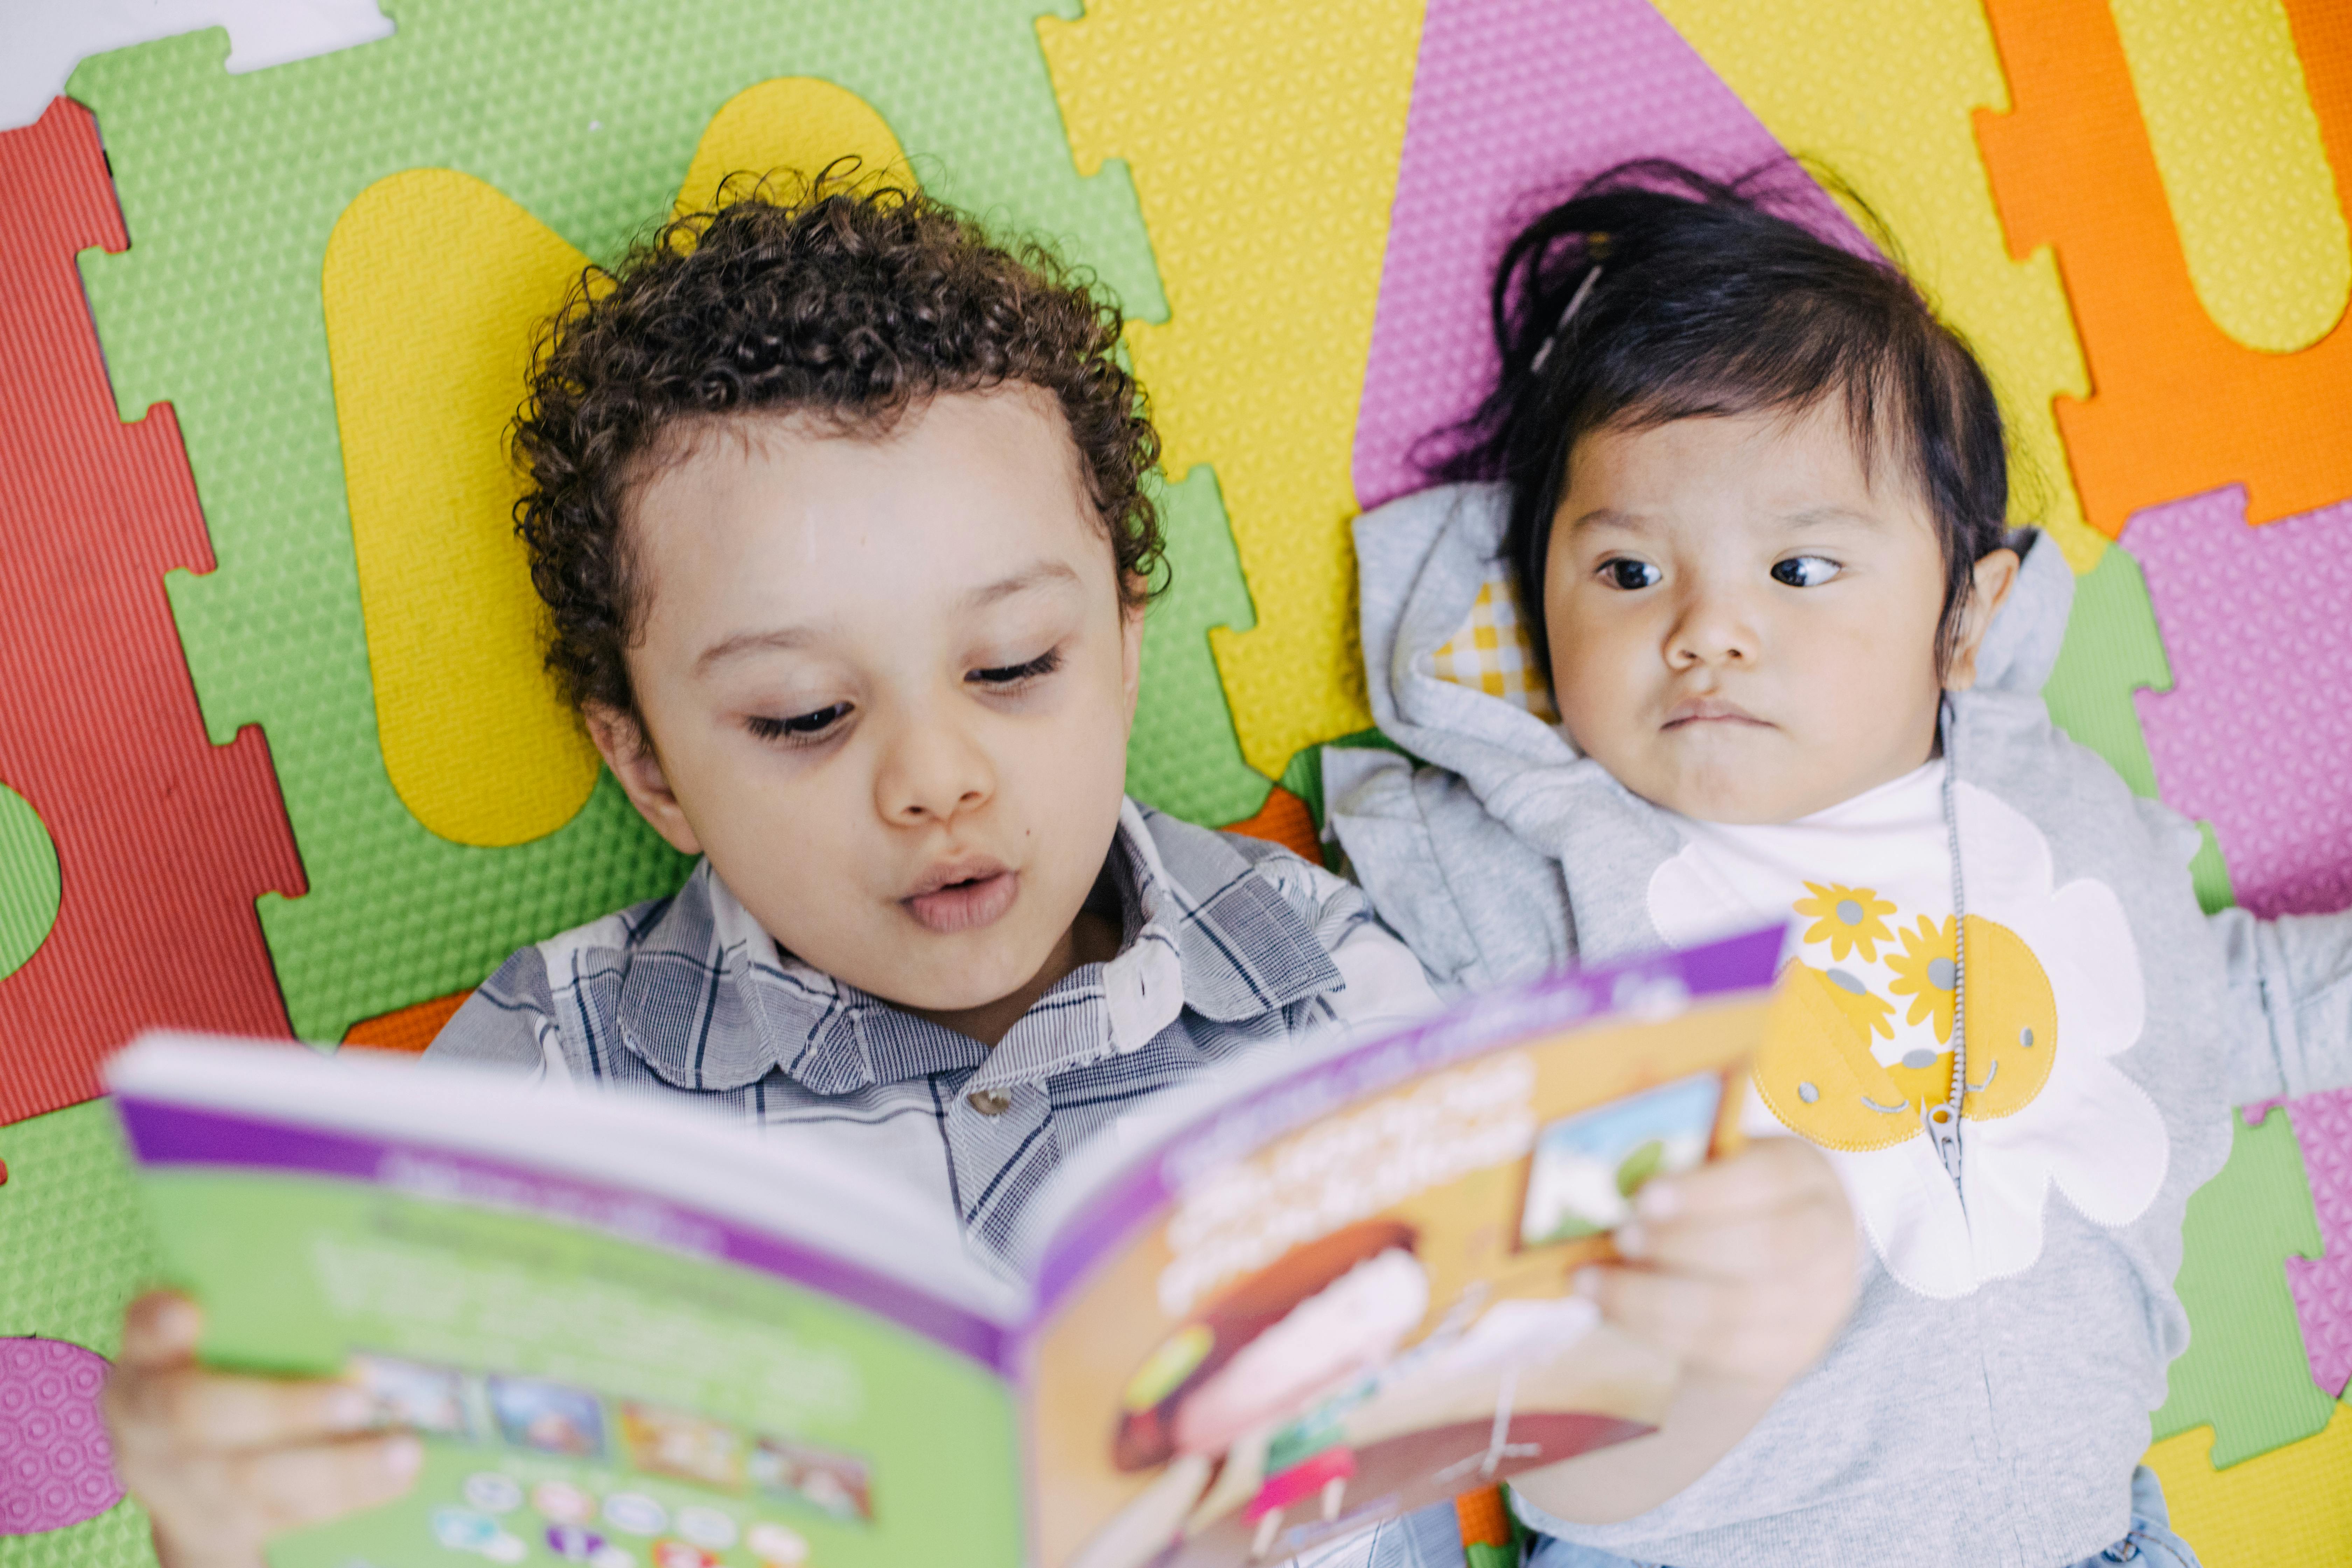 Guatemala, David Emanuel Setma Urzia (4 anni) legge un libro alla sorellina Ana Elizabeth Setma Urzia (1 anno). Entrambi sono stati adottati